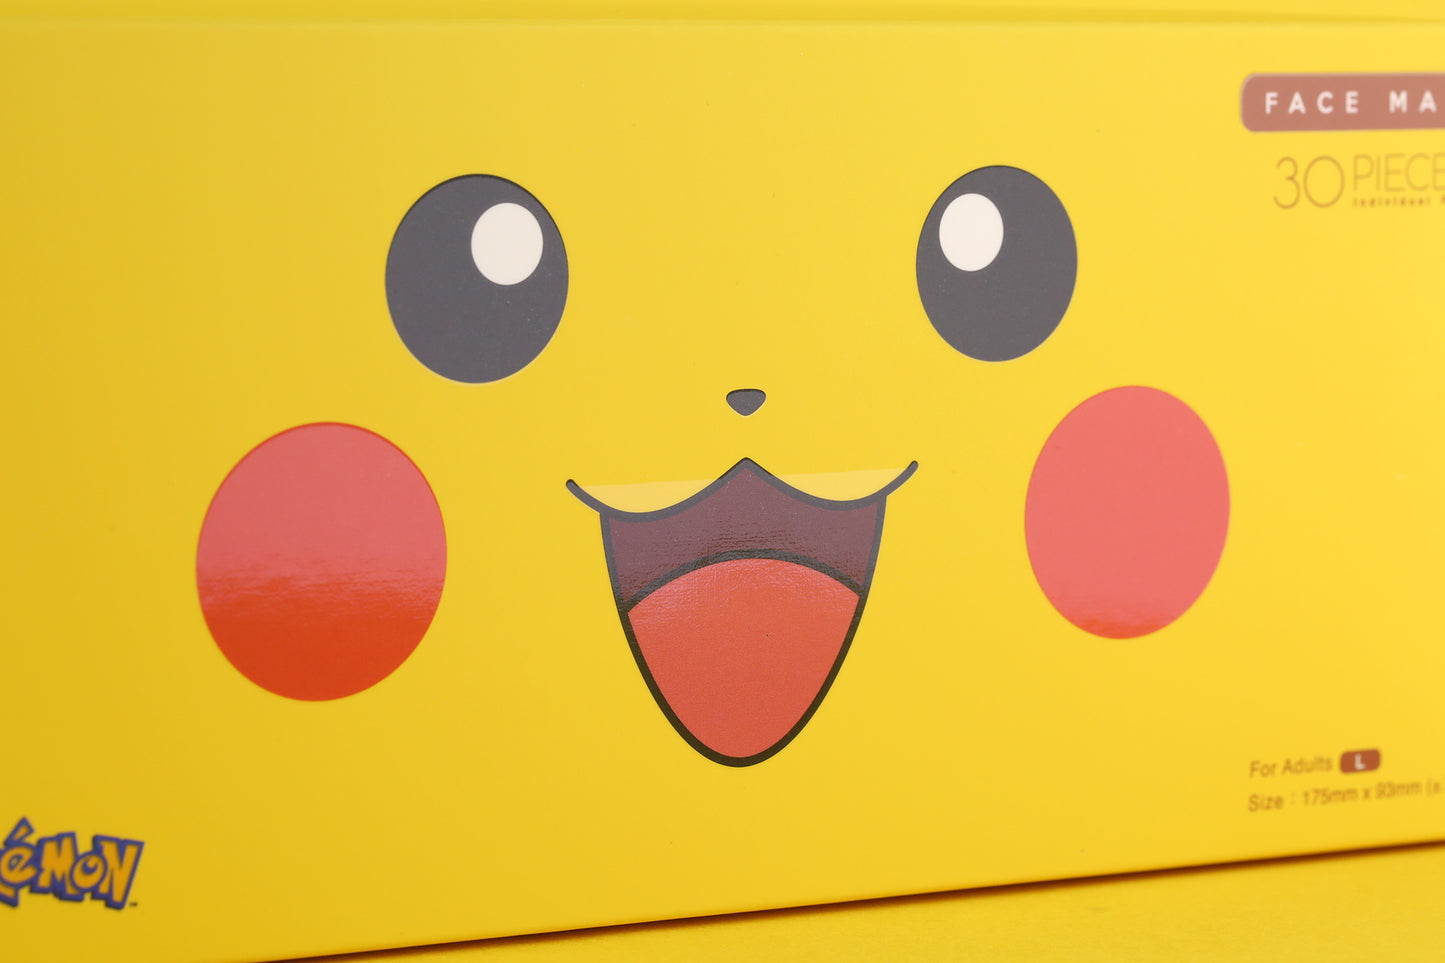 【現貨】Pikachu Color Pokemon Official Limited Edition EN14683 TypeIIR VFE99 Medox 30pcs/box【Made in Hong Kong】